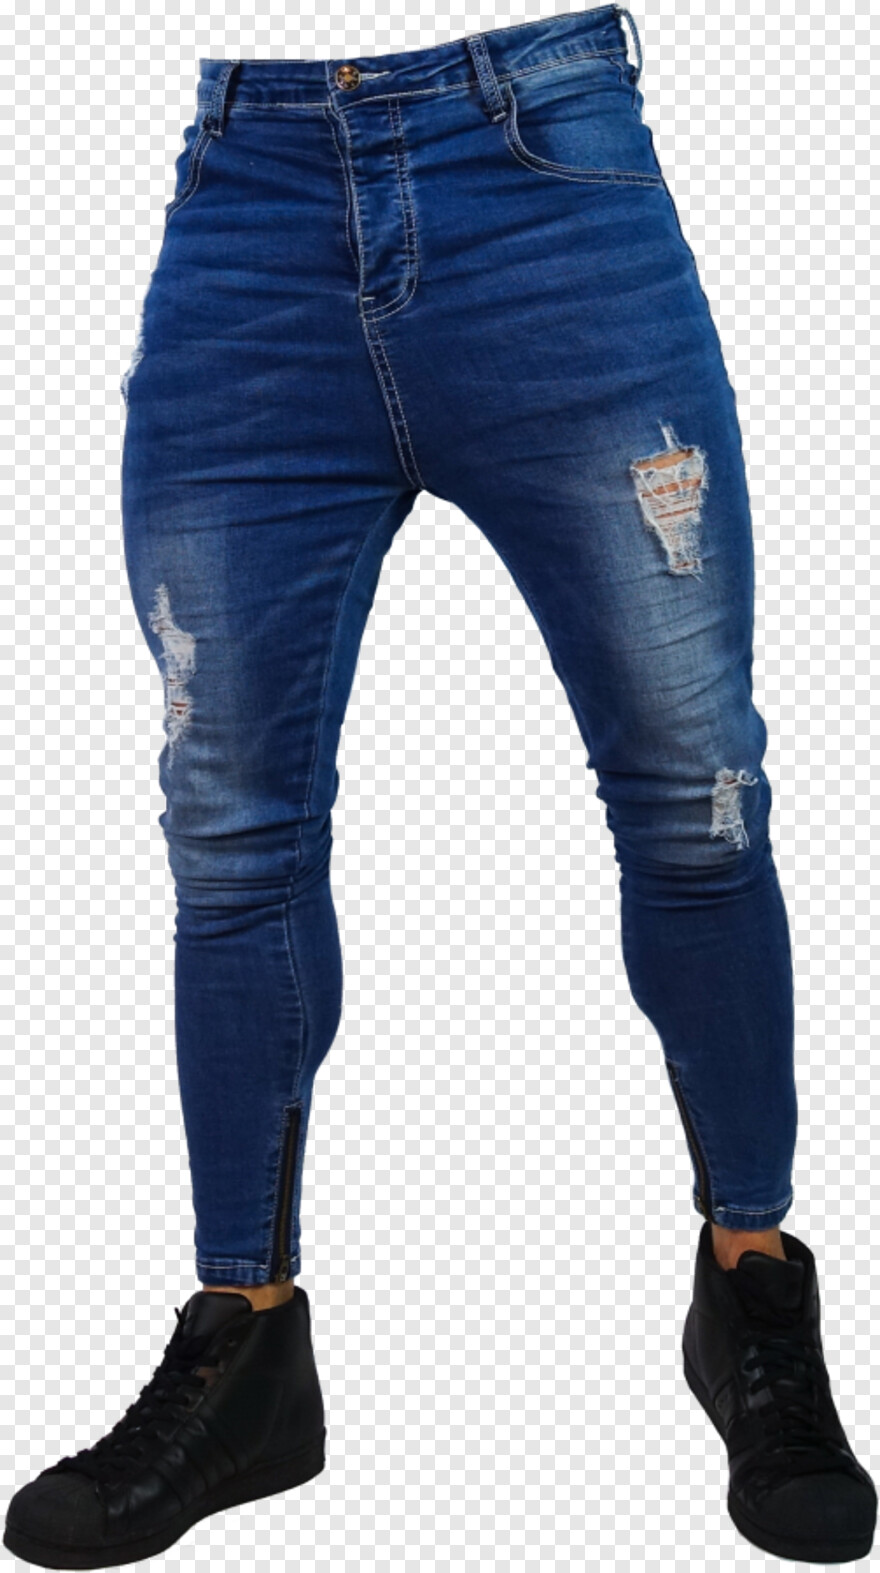 jeans-pant # 997716